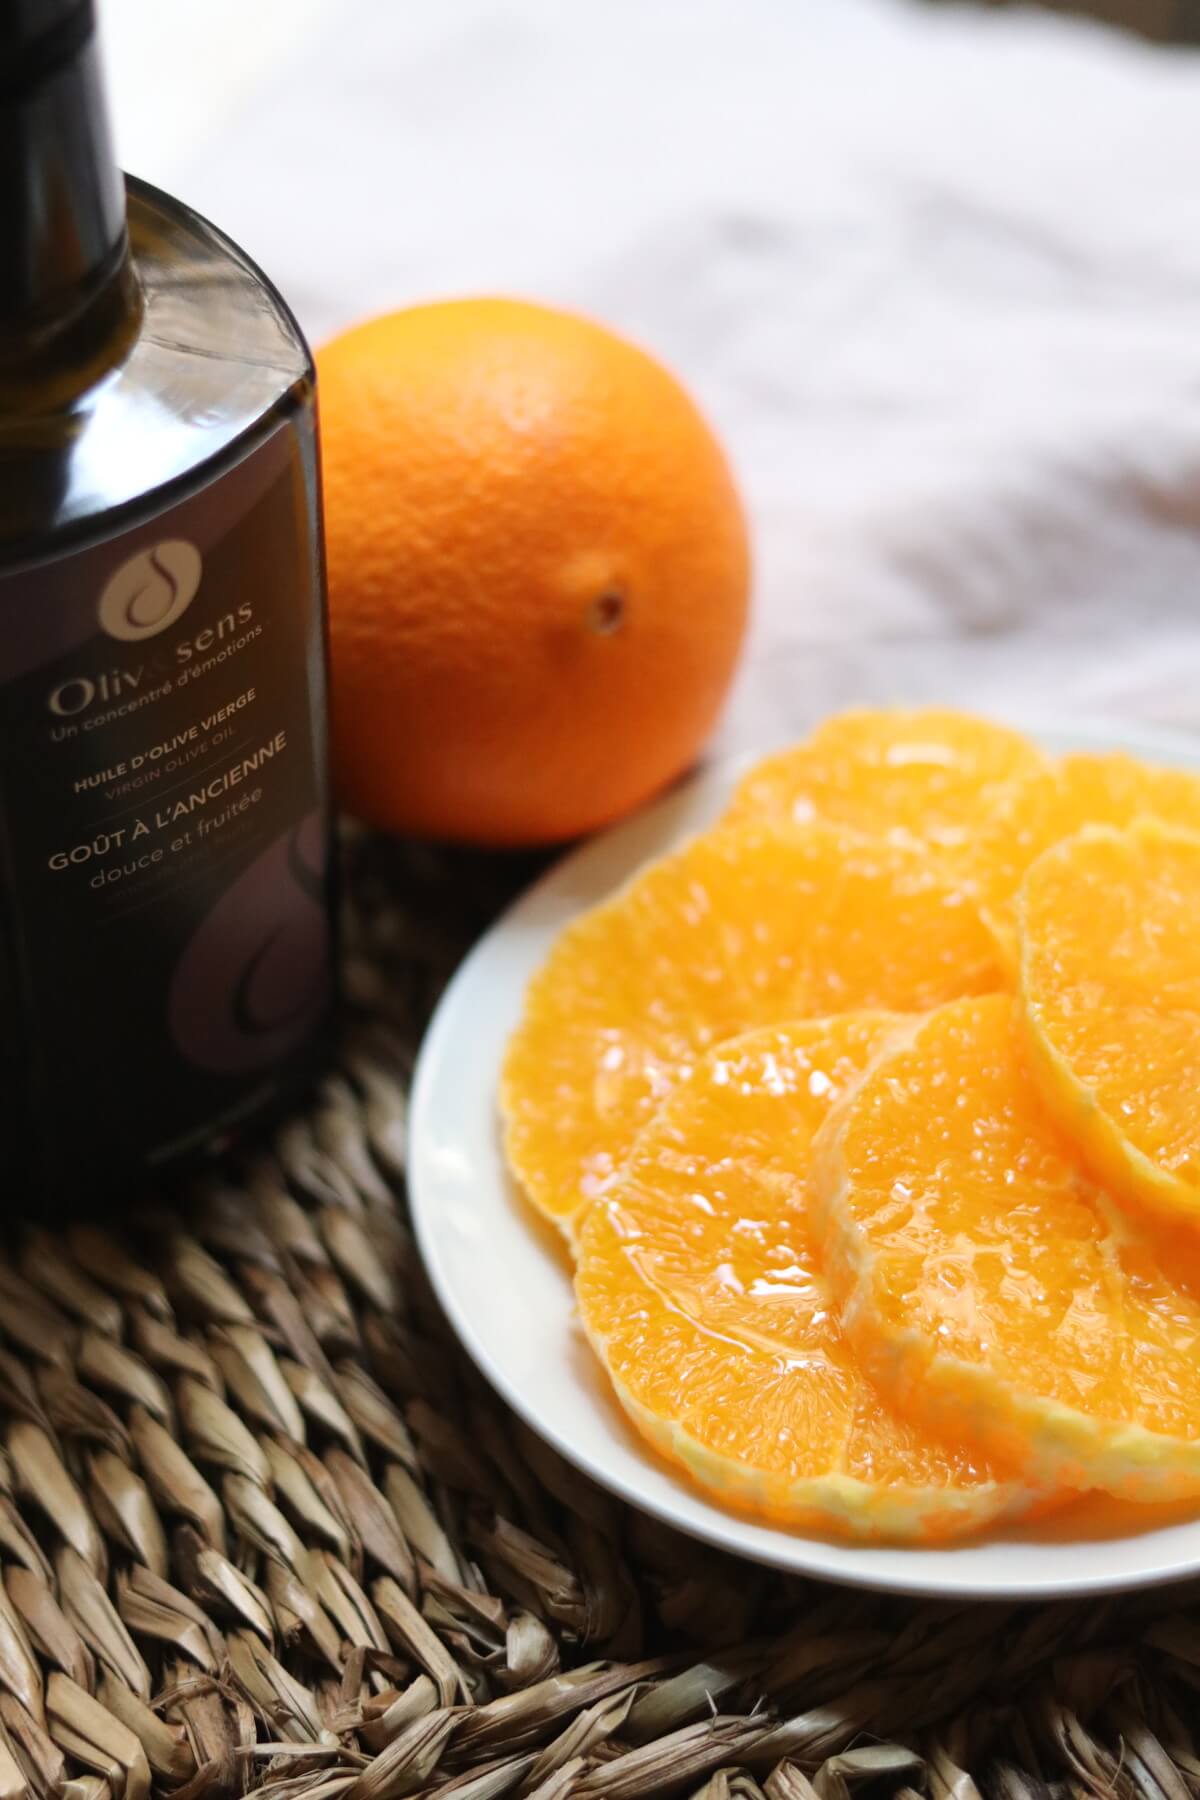 Oranges & olive oil Old fashioned taste